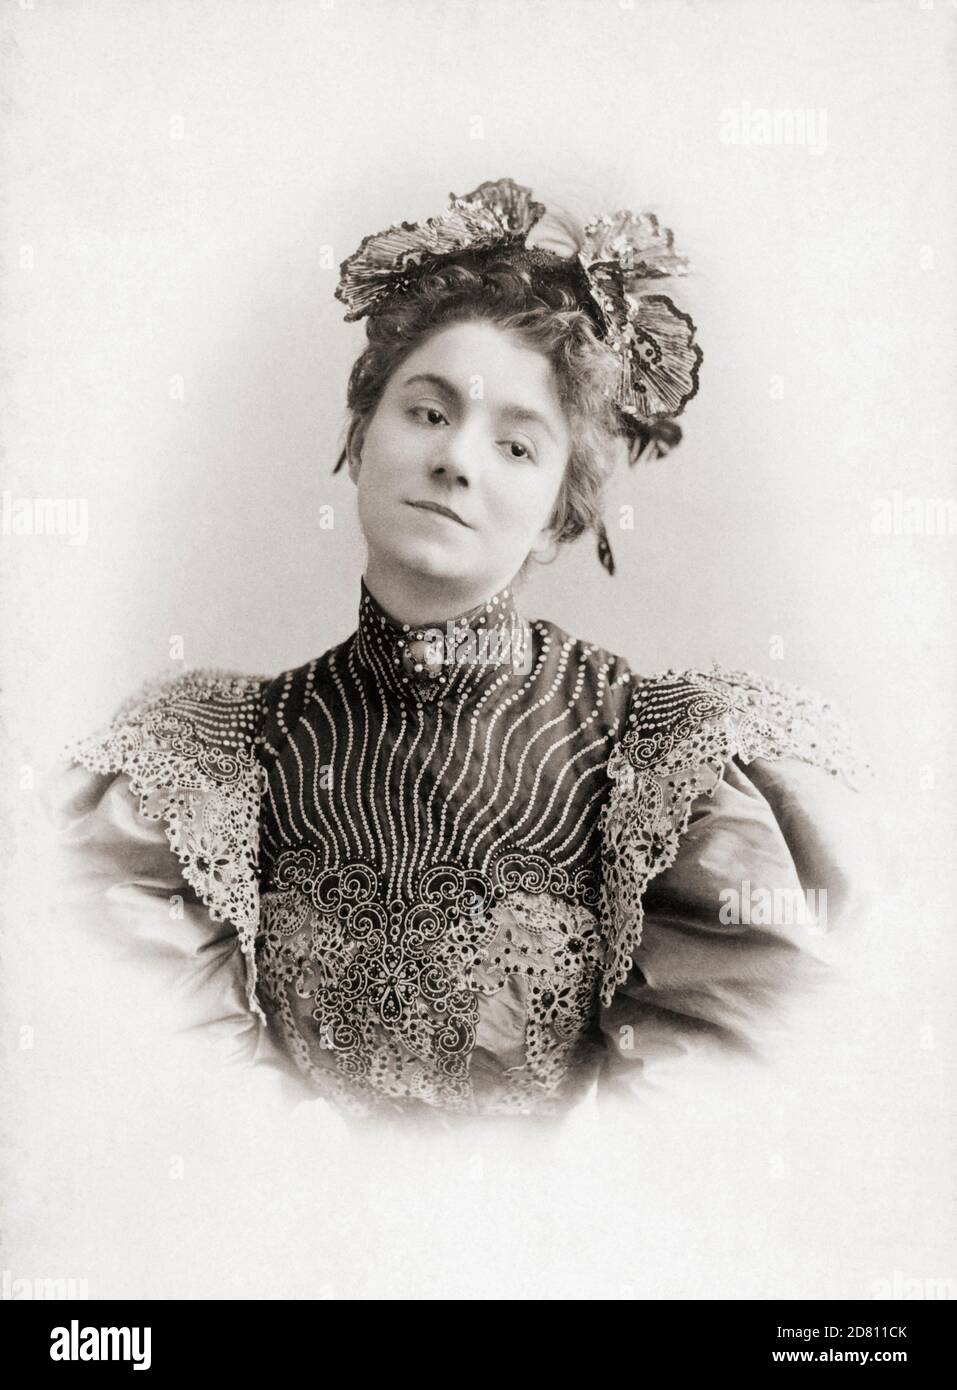 Yvette Guilbert, 1865 - 1944. Französische Kabarettsängerin und Schauspielerin. Toulouse Lautrec machte viele Skizzen und Porträts von ihr im Moulin Rouge, wo sie oft ganz oben auf der Rechnung war. 1932 wurde sie mit der Ehrenlegion als Botschafterin des französischen Liedes ausgezeichnet. Nach einer Fotografie des deutschen Fotografen Charles Reutlinger, 1816 - 1888. Stockfoto